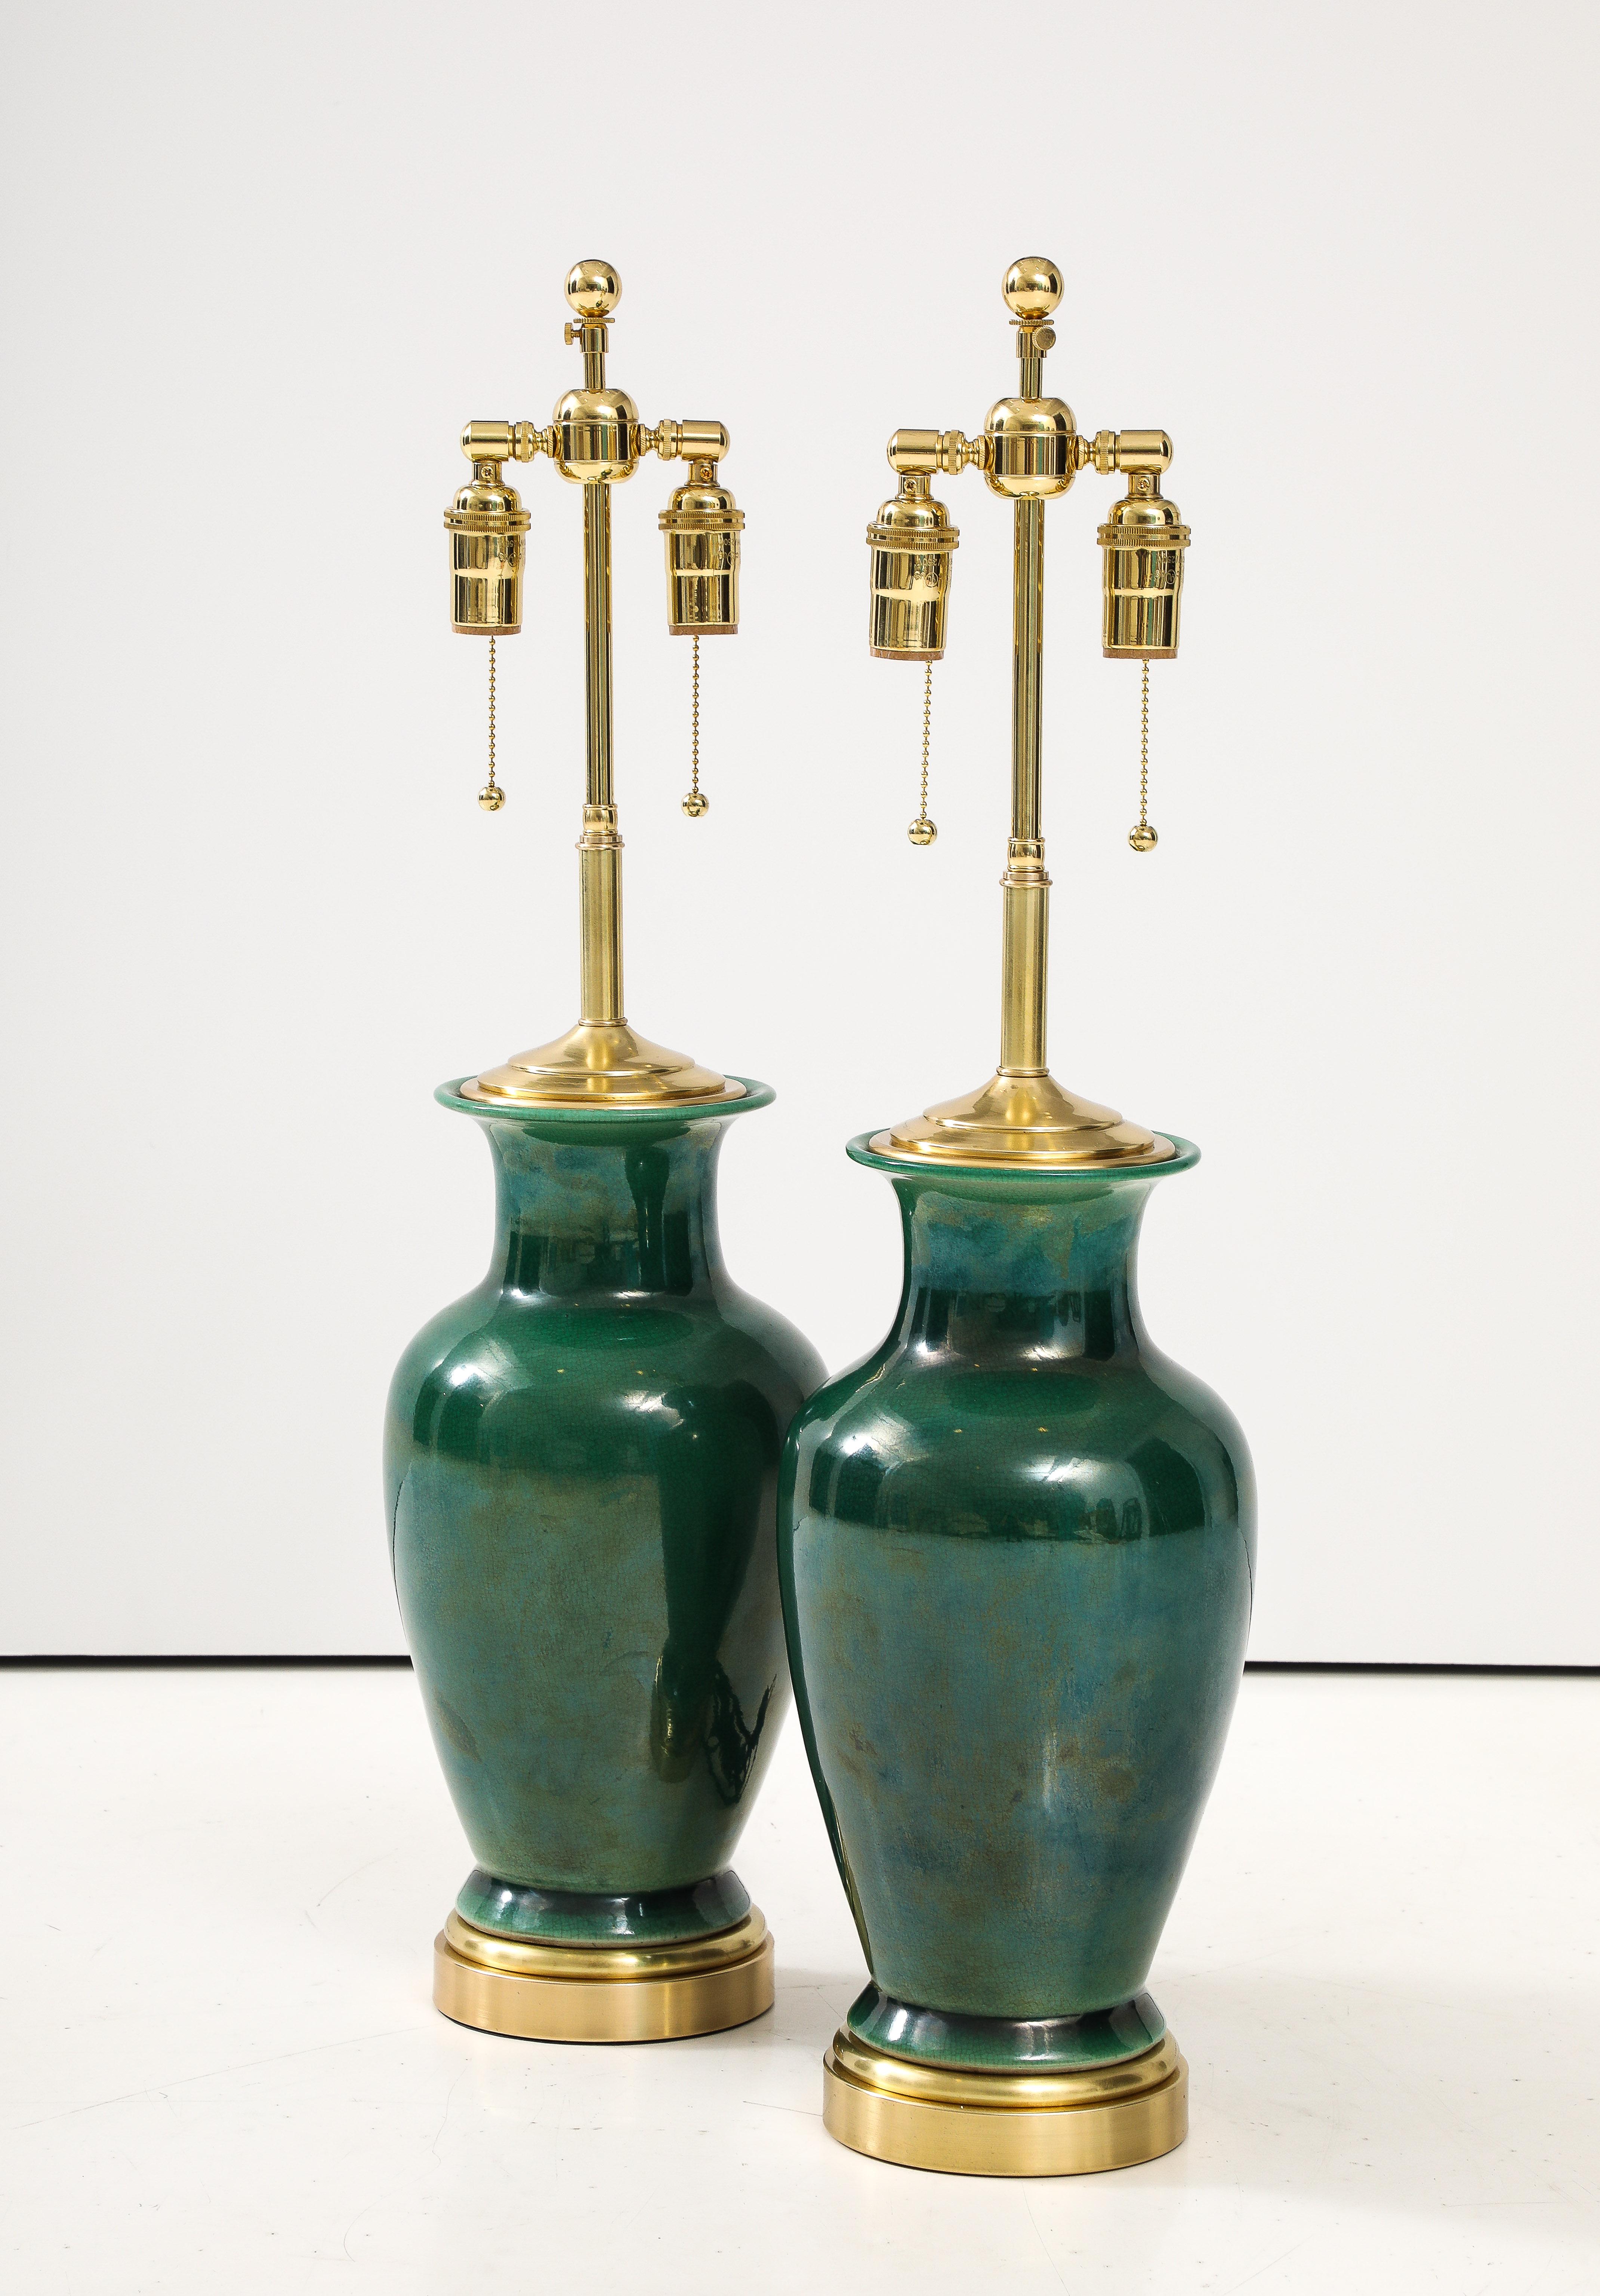 Schönes Paar japanischer Keramiklampen in Urnenform mit grüner Craquelé-Glasur.
Die Lampen wurden neu verkabelt, mit einstellbaren polierten Messing-Doppelclustern und 
Seidenkordeln aus Rayon.
Jede Lampenfassung nimmt bis zu 60 Watt / 120 Watt pro